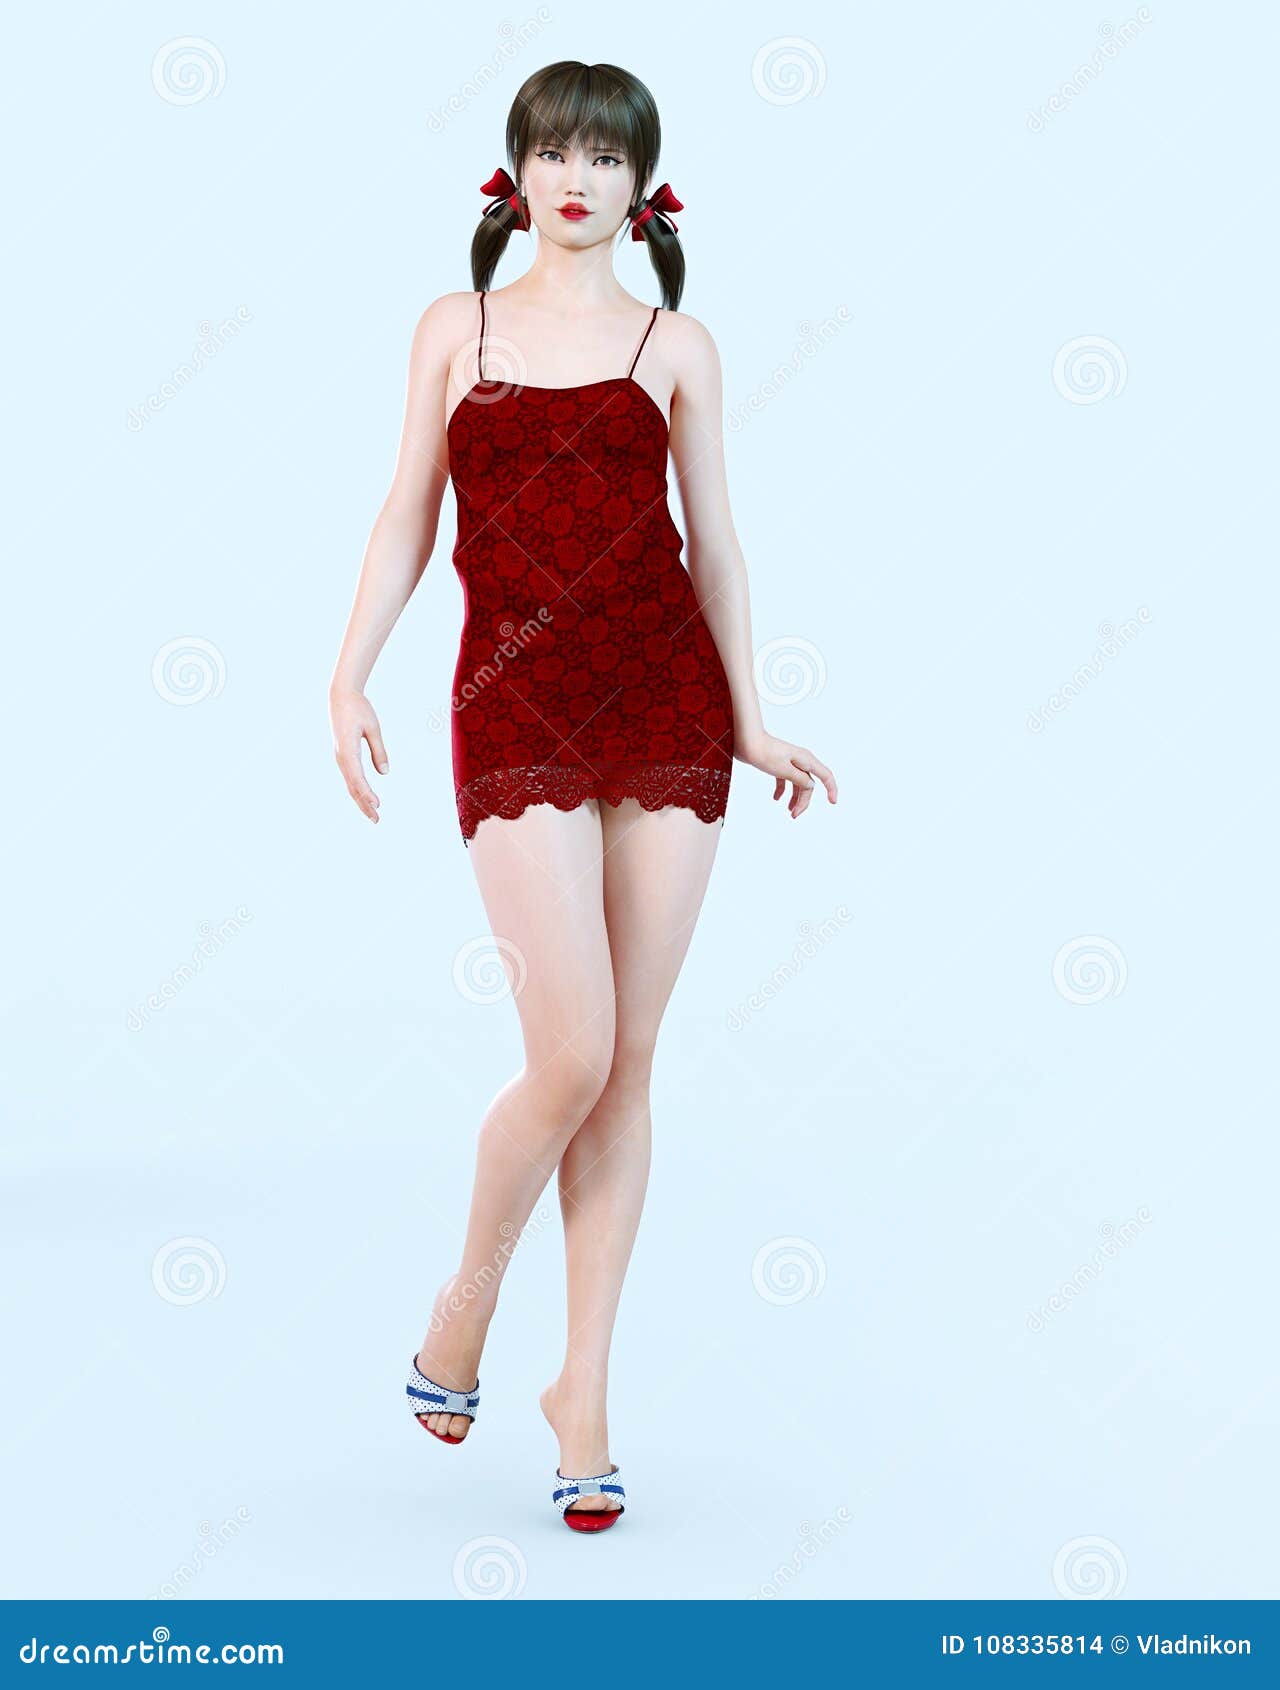 Muchacha Vestido Rojo Corto En Flor Stock de ilustración - Ilustración conceptual, 108335814